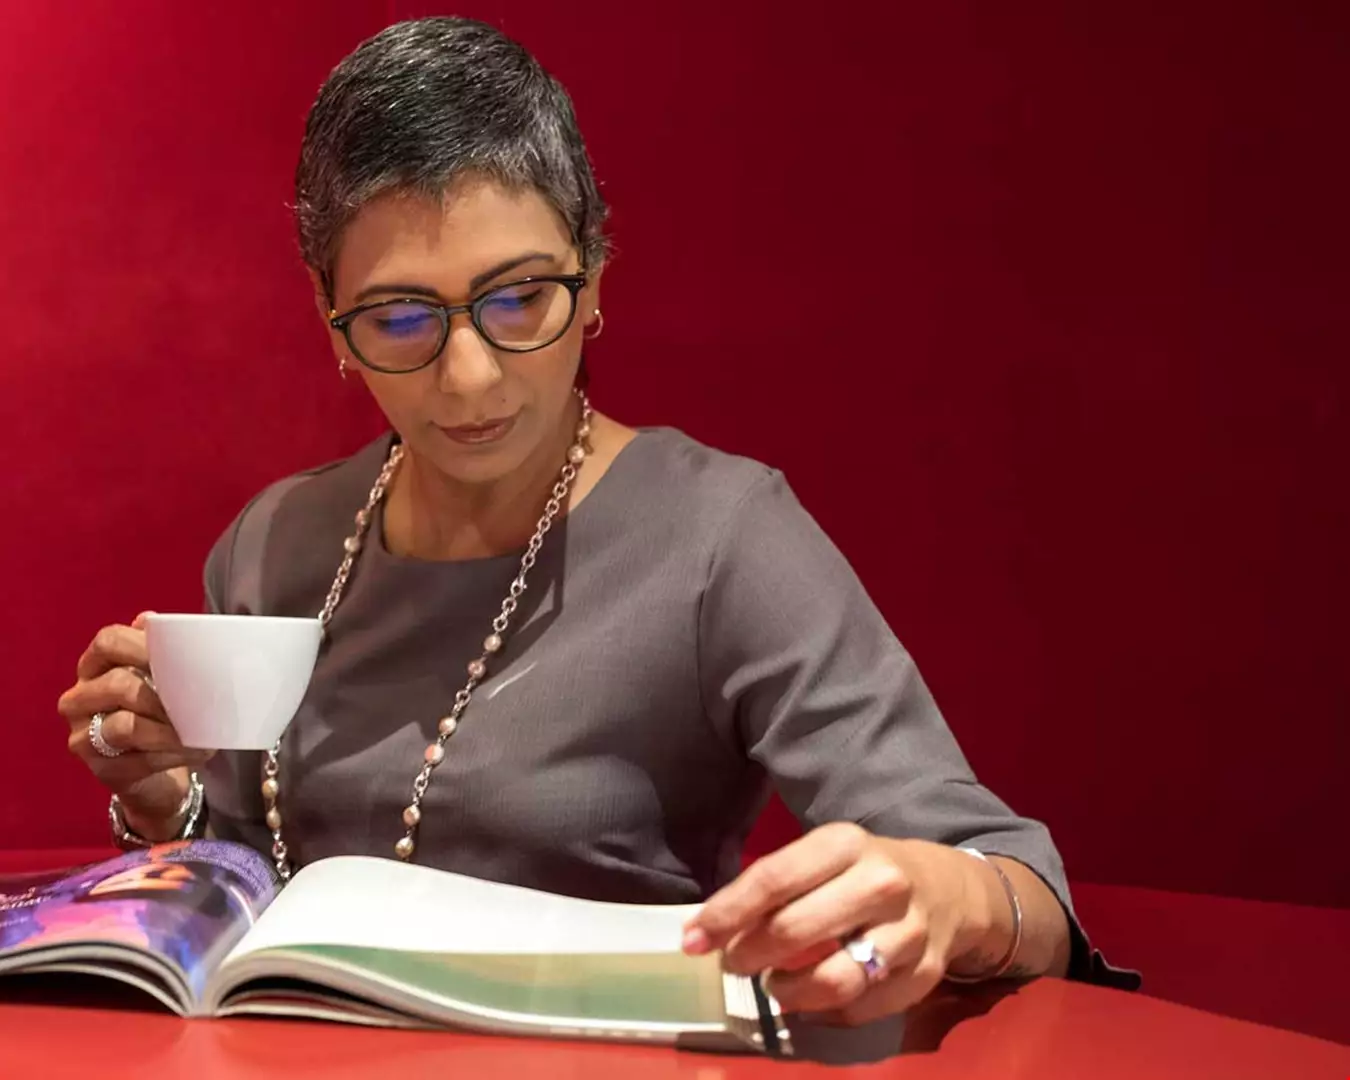 Kvinna i medelåldern, grått kort hår, kaffekopp i handen, läser i en pärm